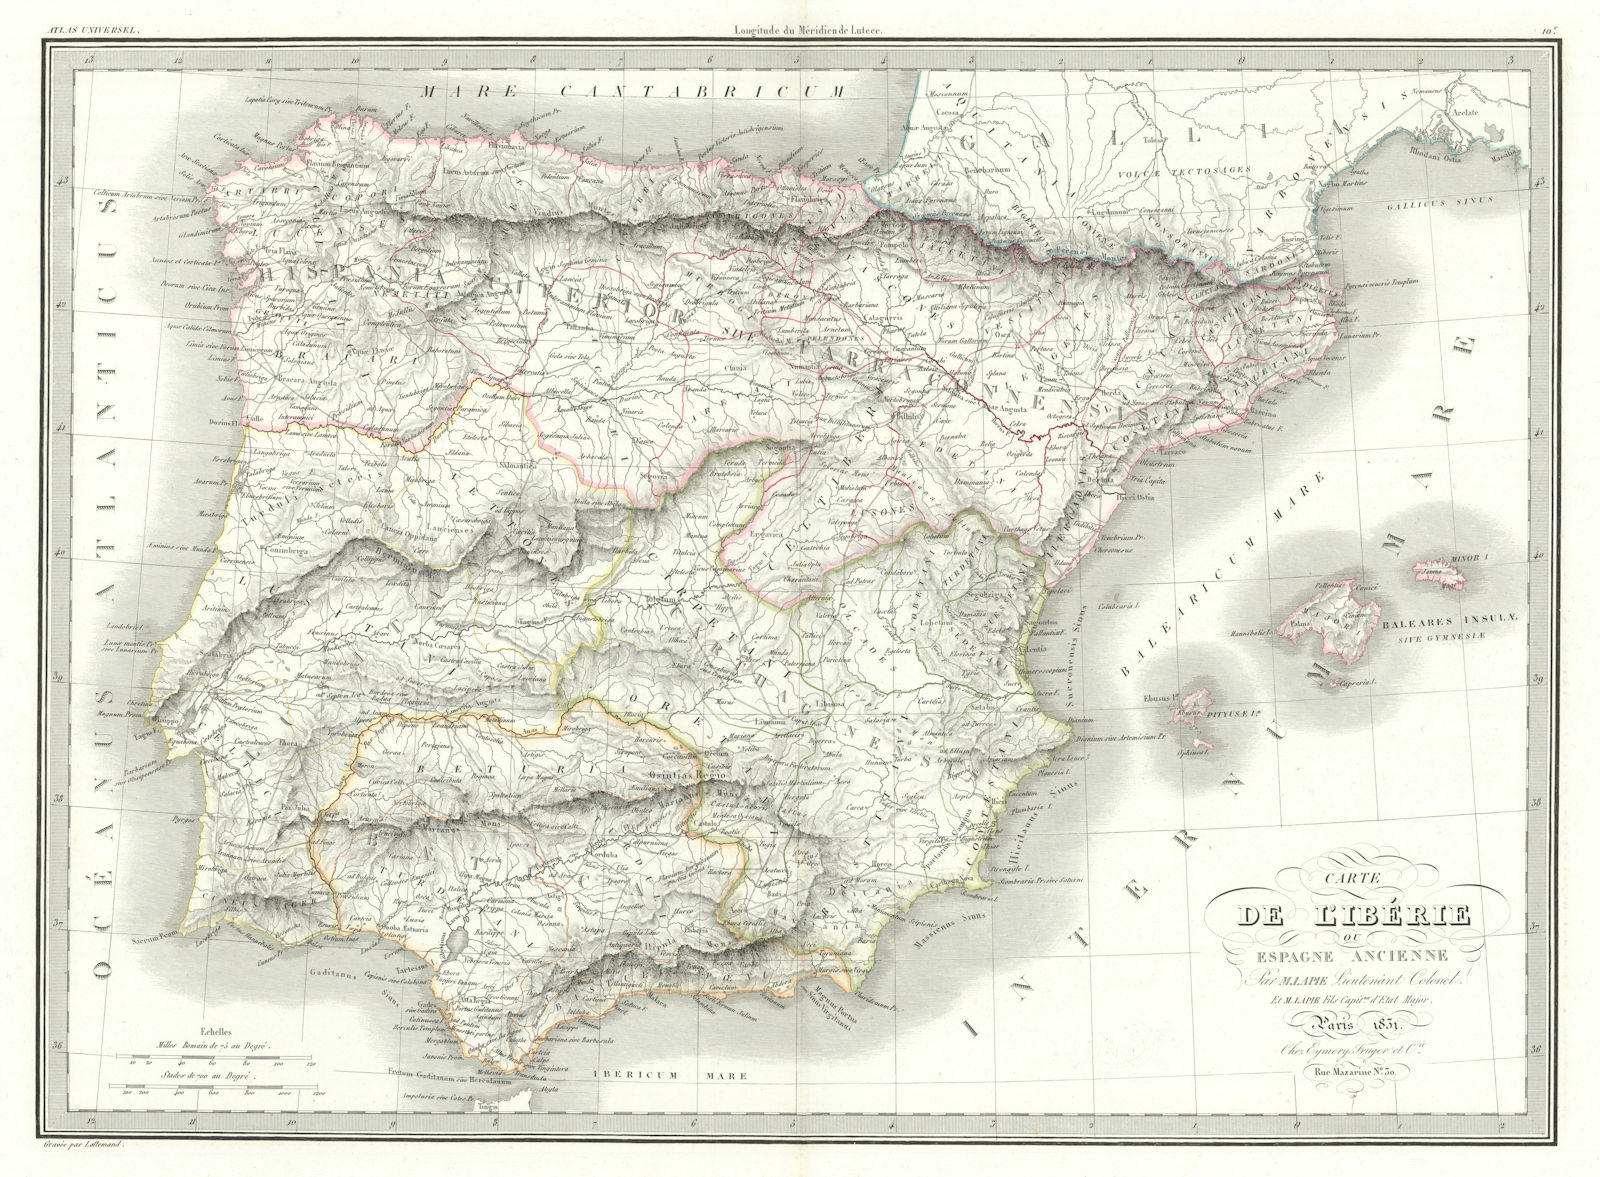 Carte de l'Ibérie ou Espagne ancienne. Iberia or Ancient Spain. LAPIE 1831 map